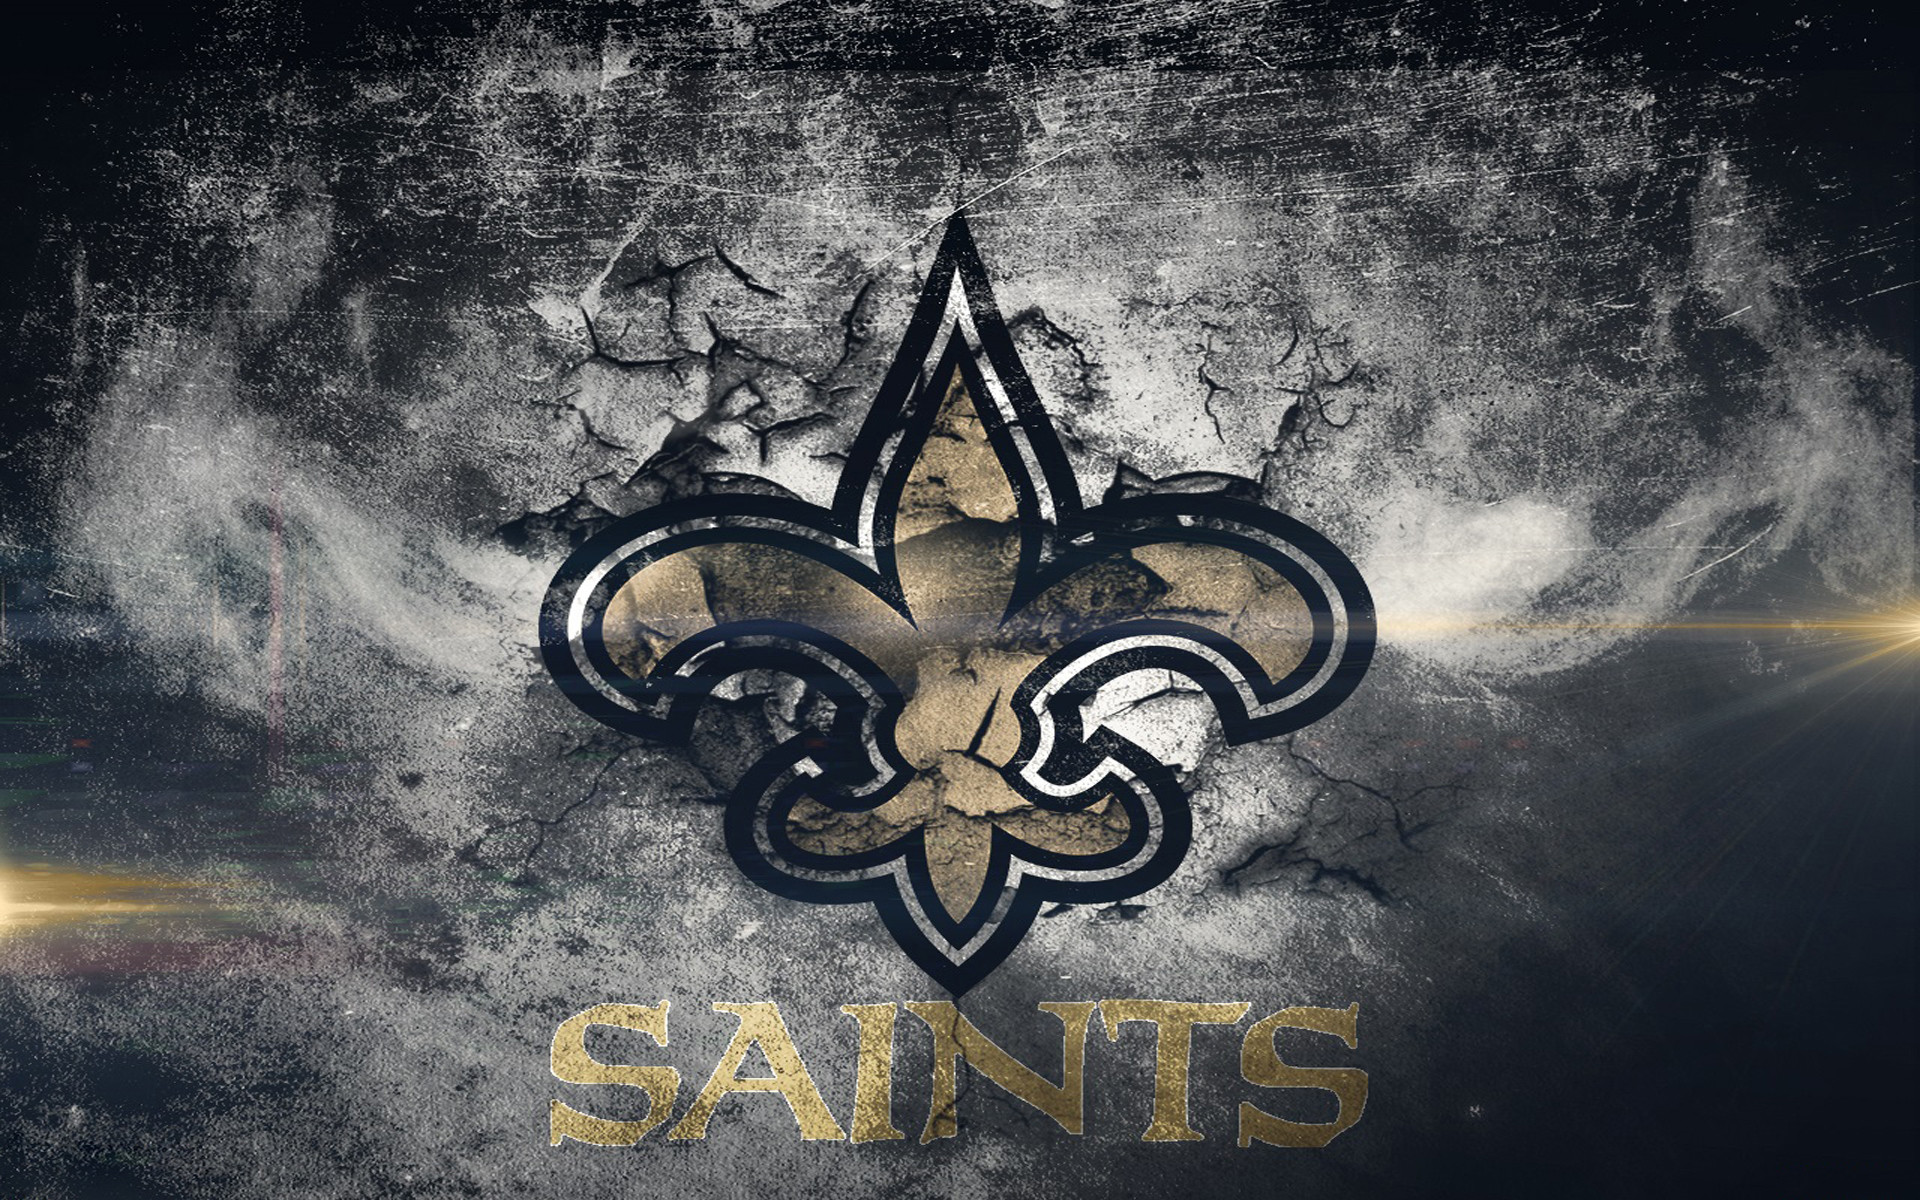 1920x1200 Download Fullsize Image Â· New Orleans Saints wallpaper ...